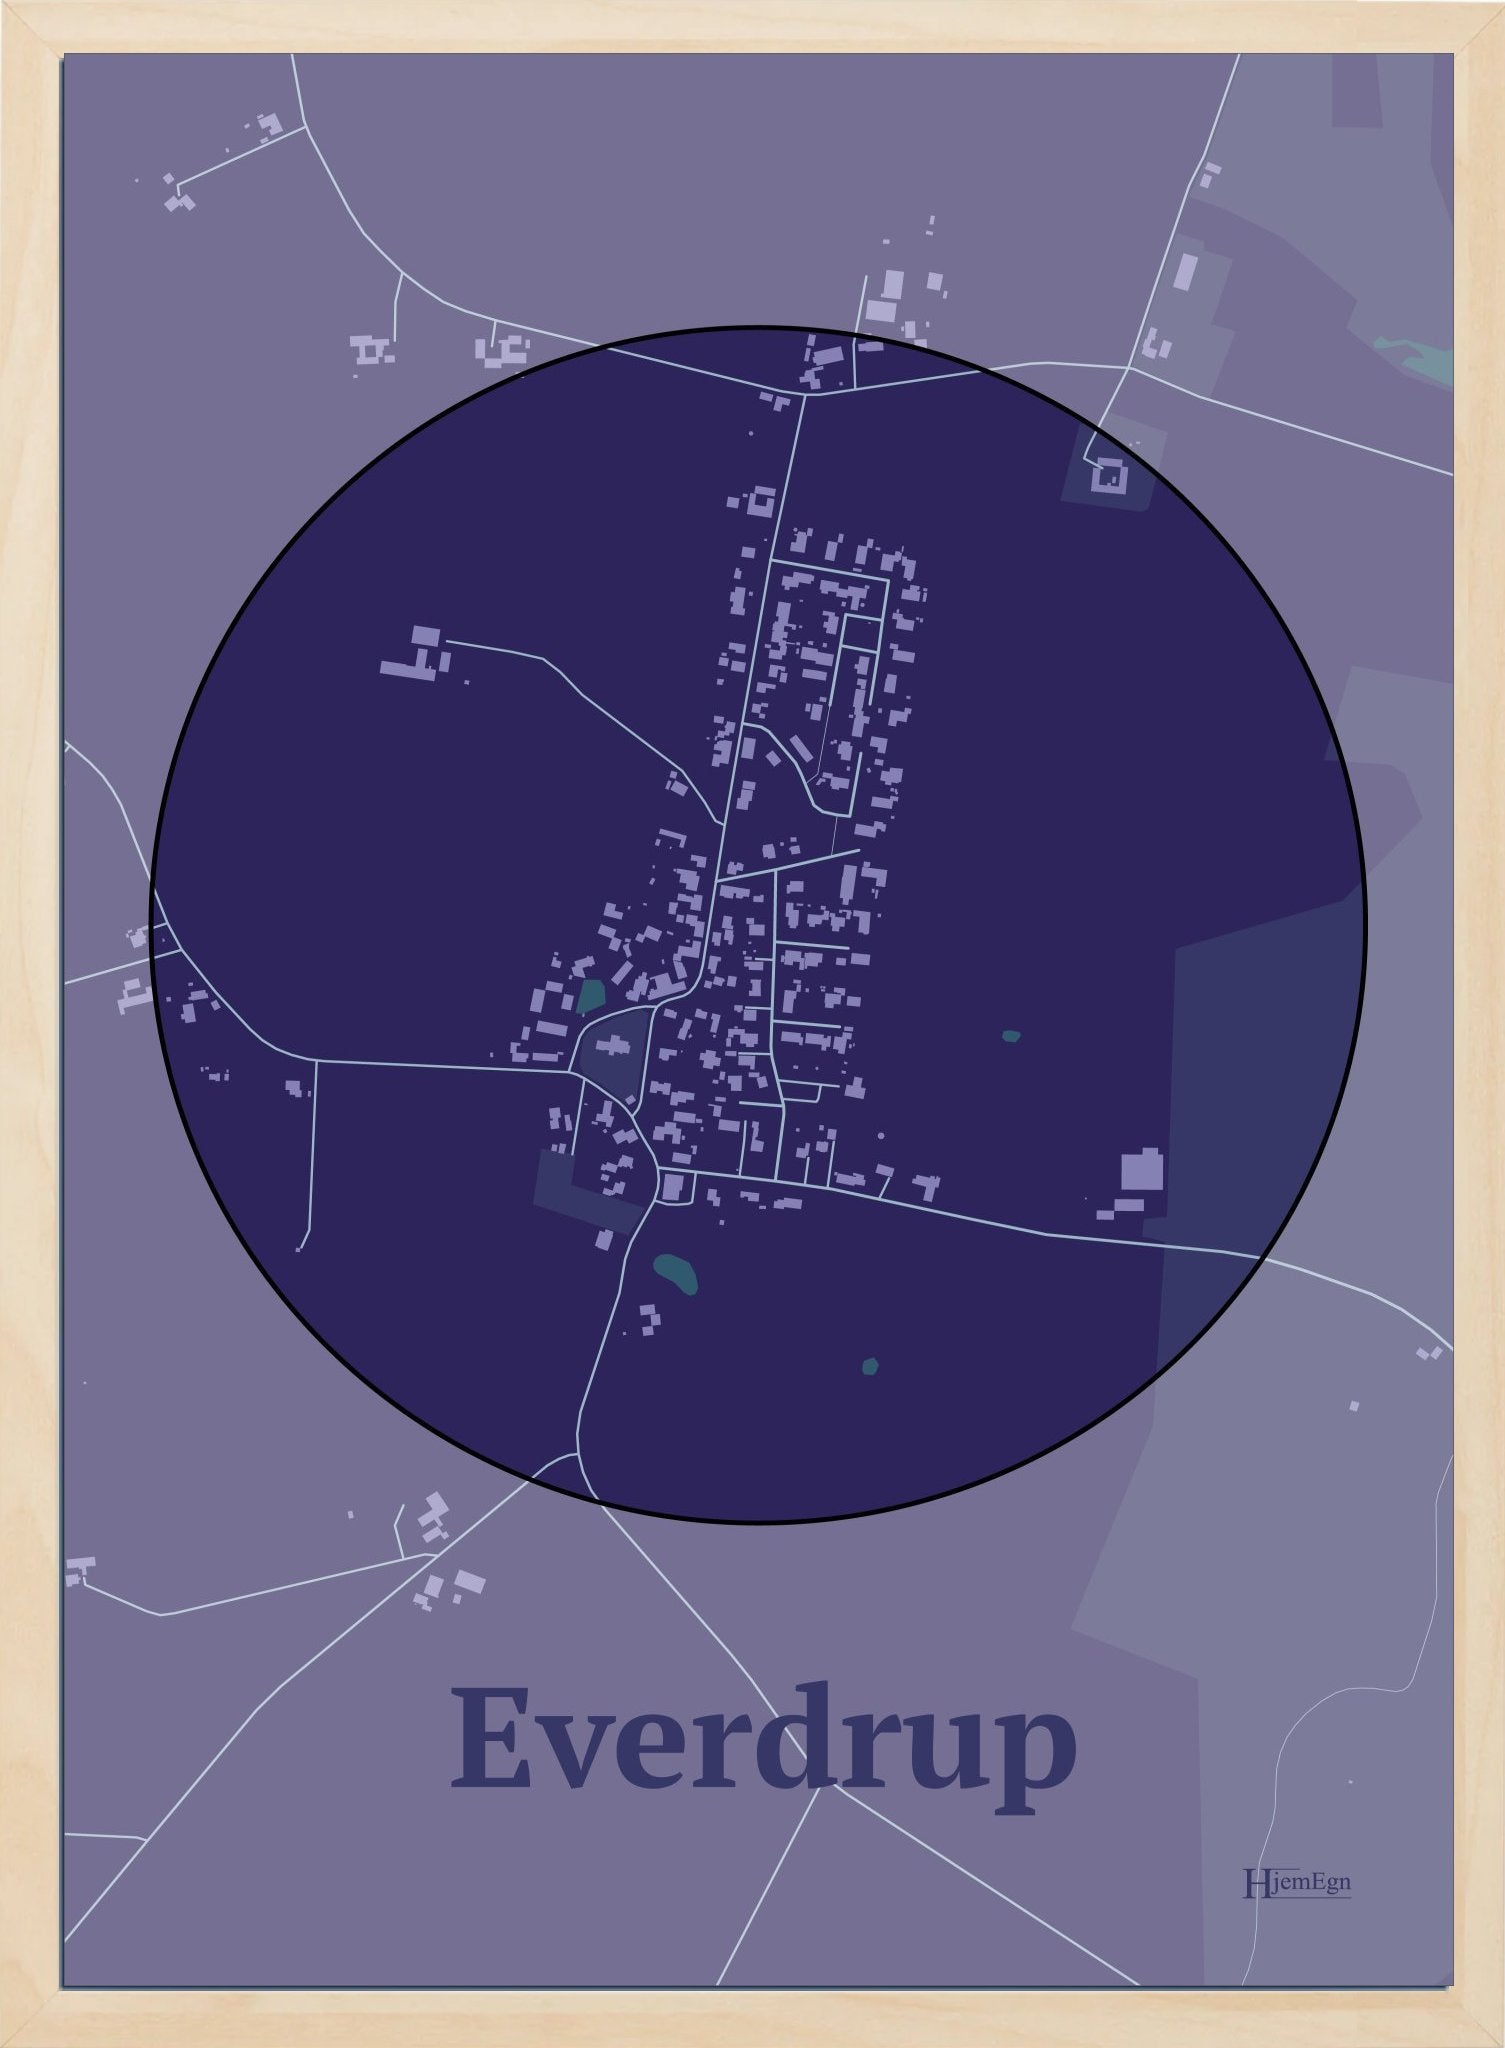 Everdrup plakat i farve mørk lilla og HjemEgn.dk design centrum. Design bykort for Everdrup